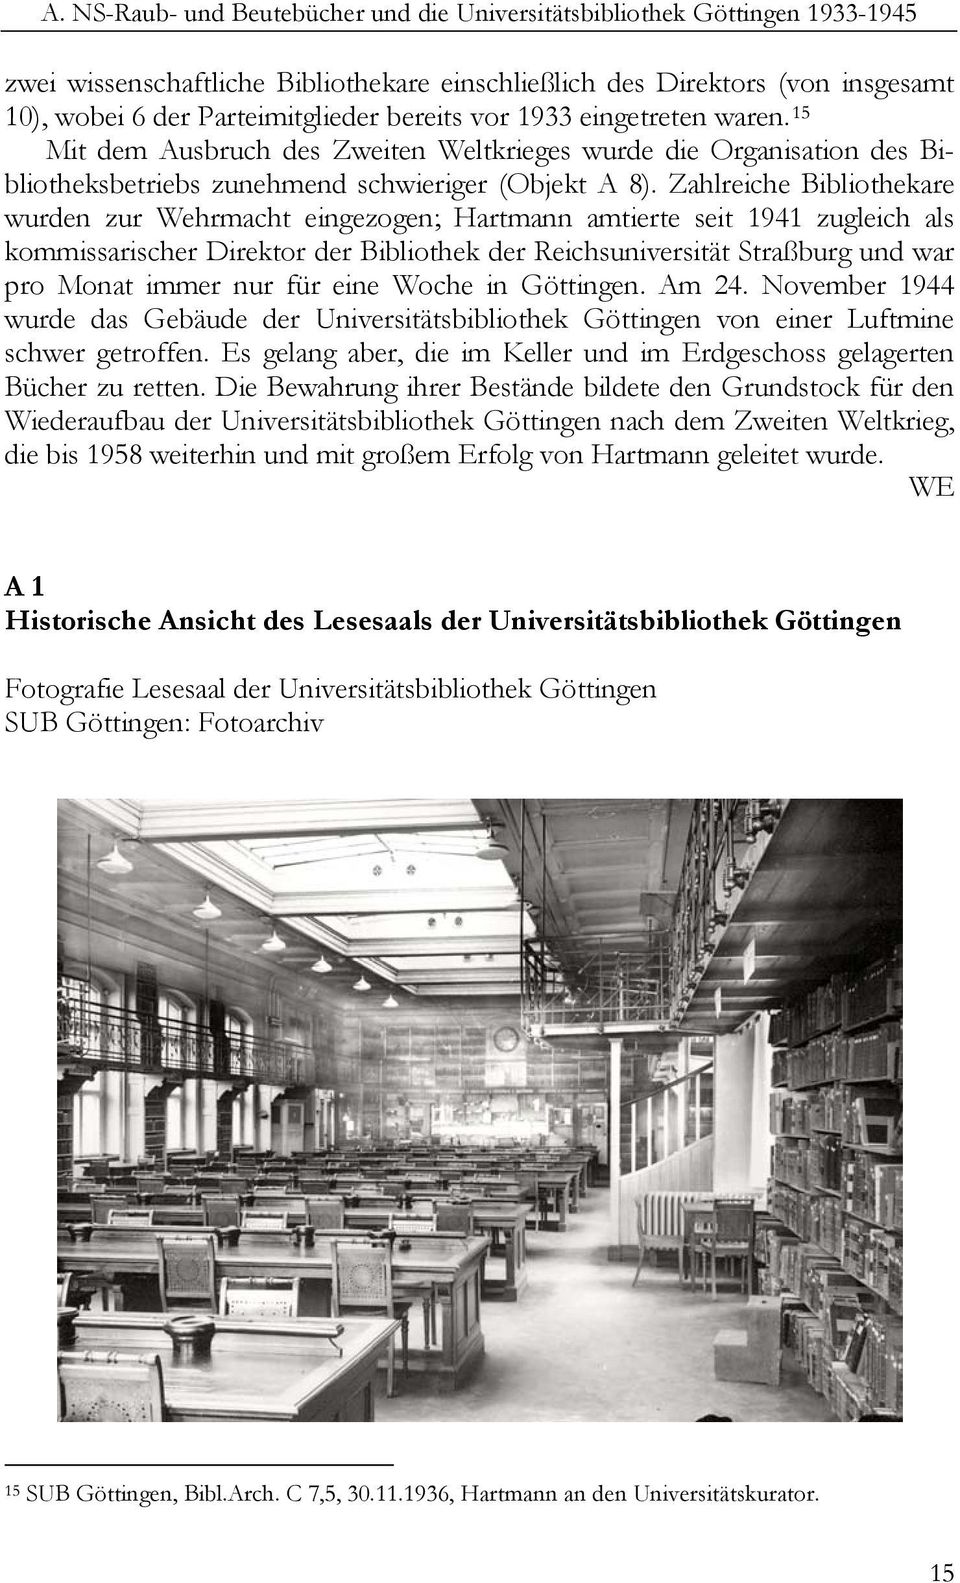 Zahlreiche Bibliothekare wurden zur Wehrmacht eingezogen; Hartmann amtierte seit 1941 zugleich als kommissarischer Direktor der Bibliothek der Reichsuniversität Straßburg und war pro Monat immer nur